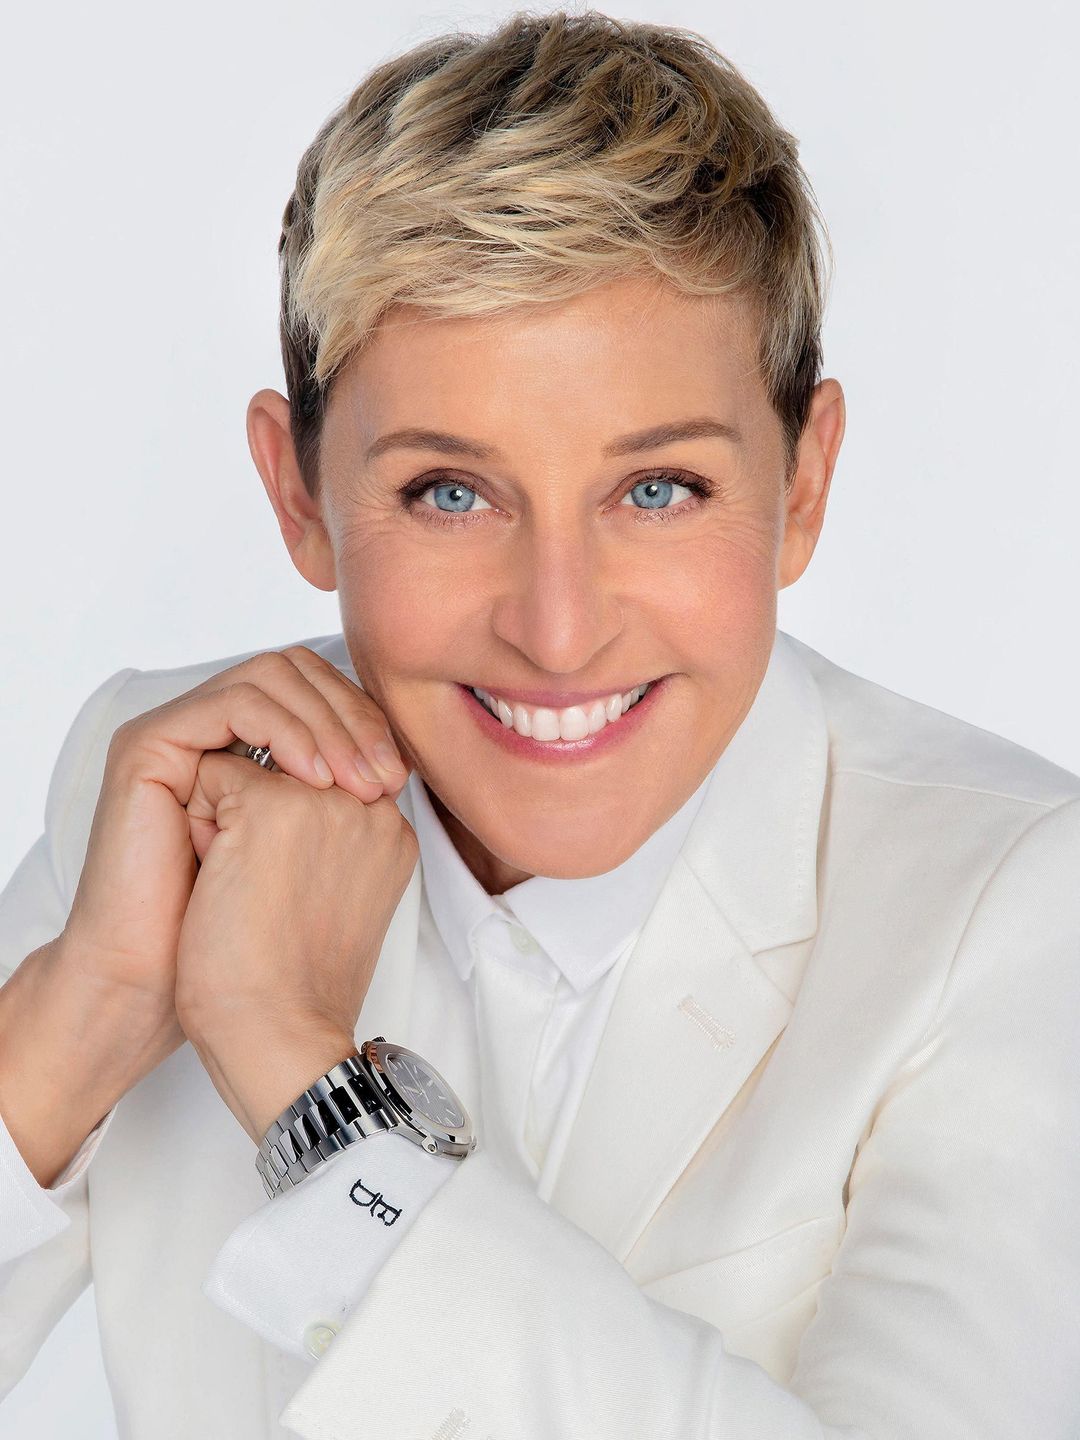 Ellen DeGeneres how old is she